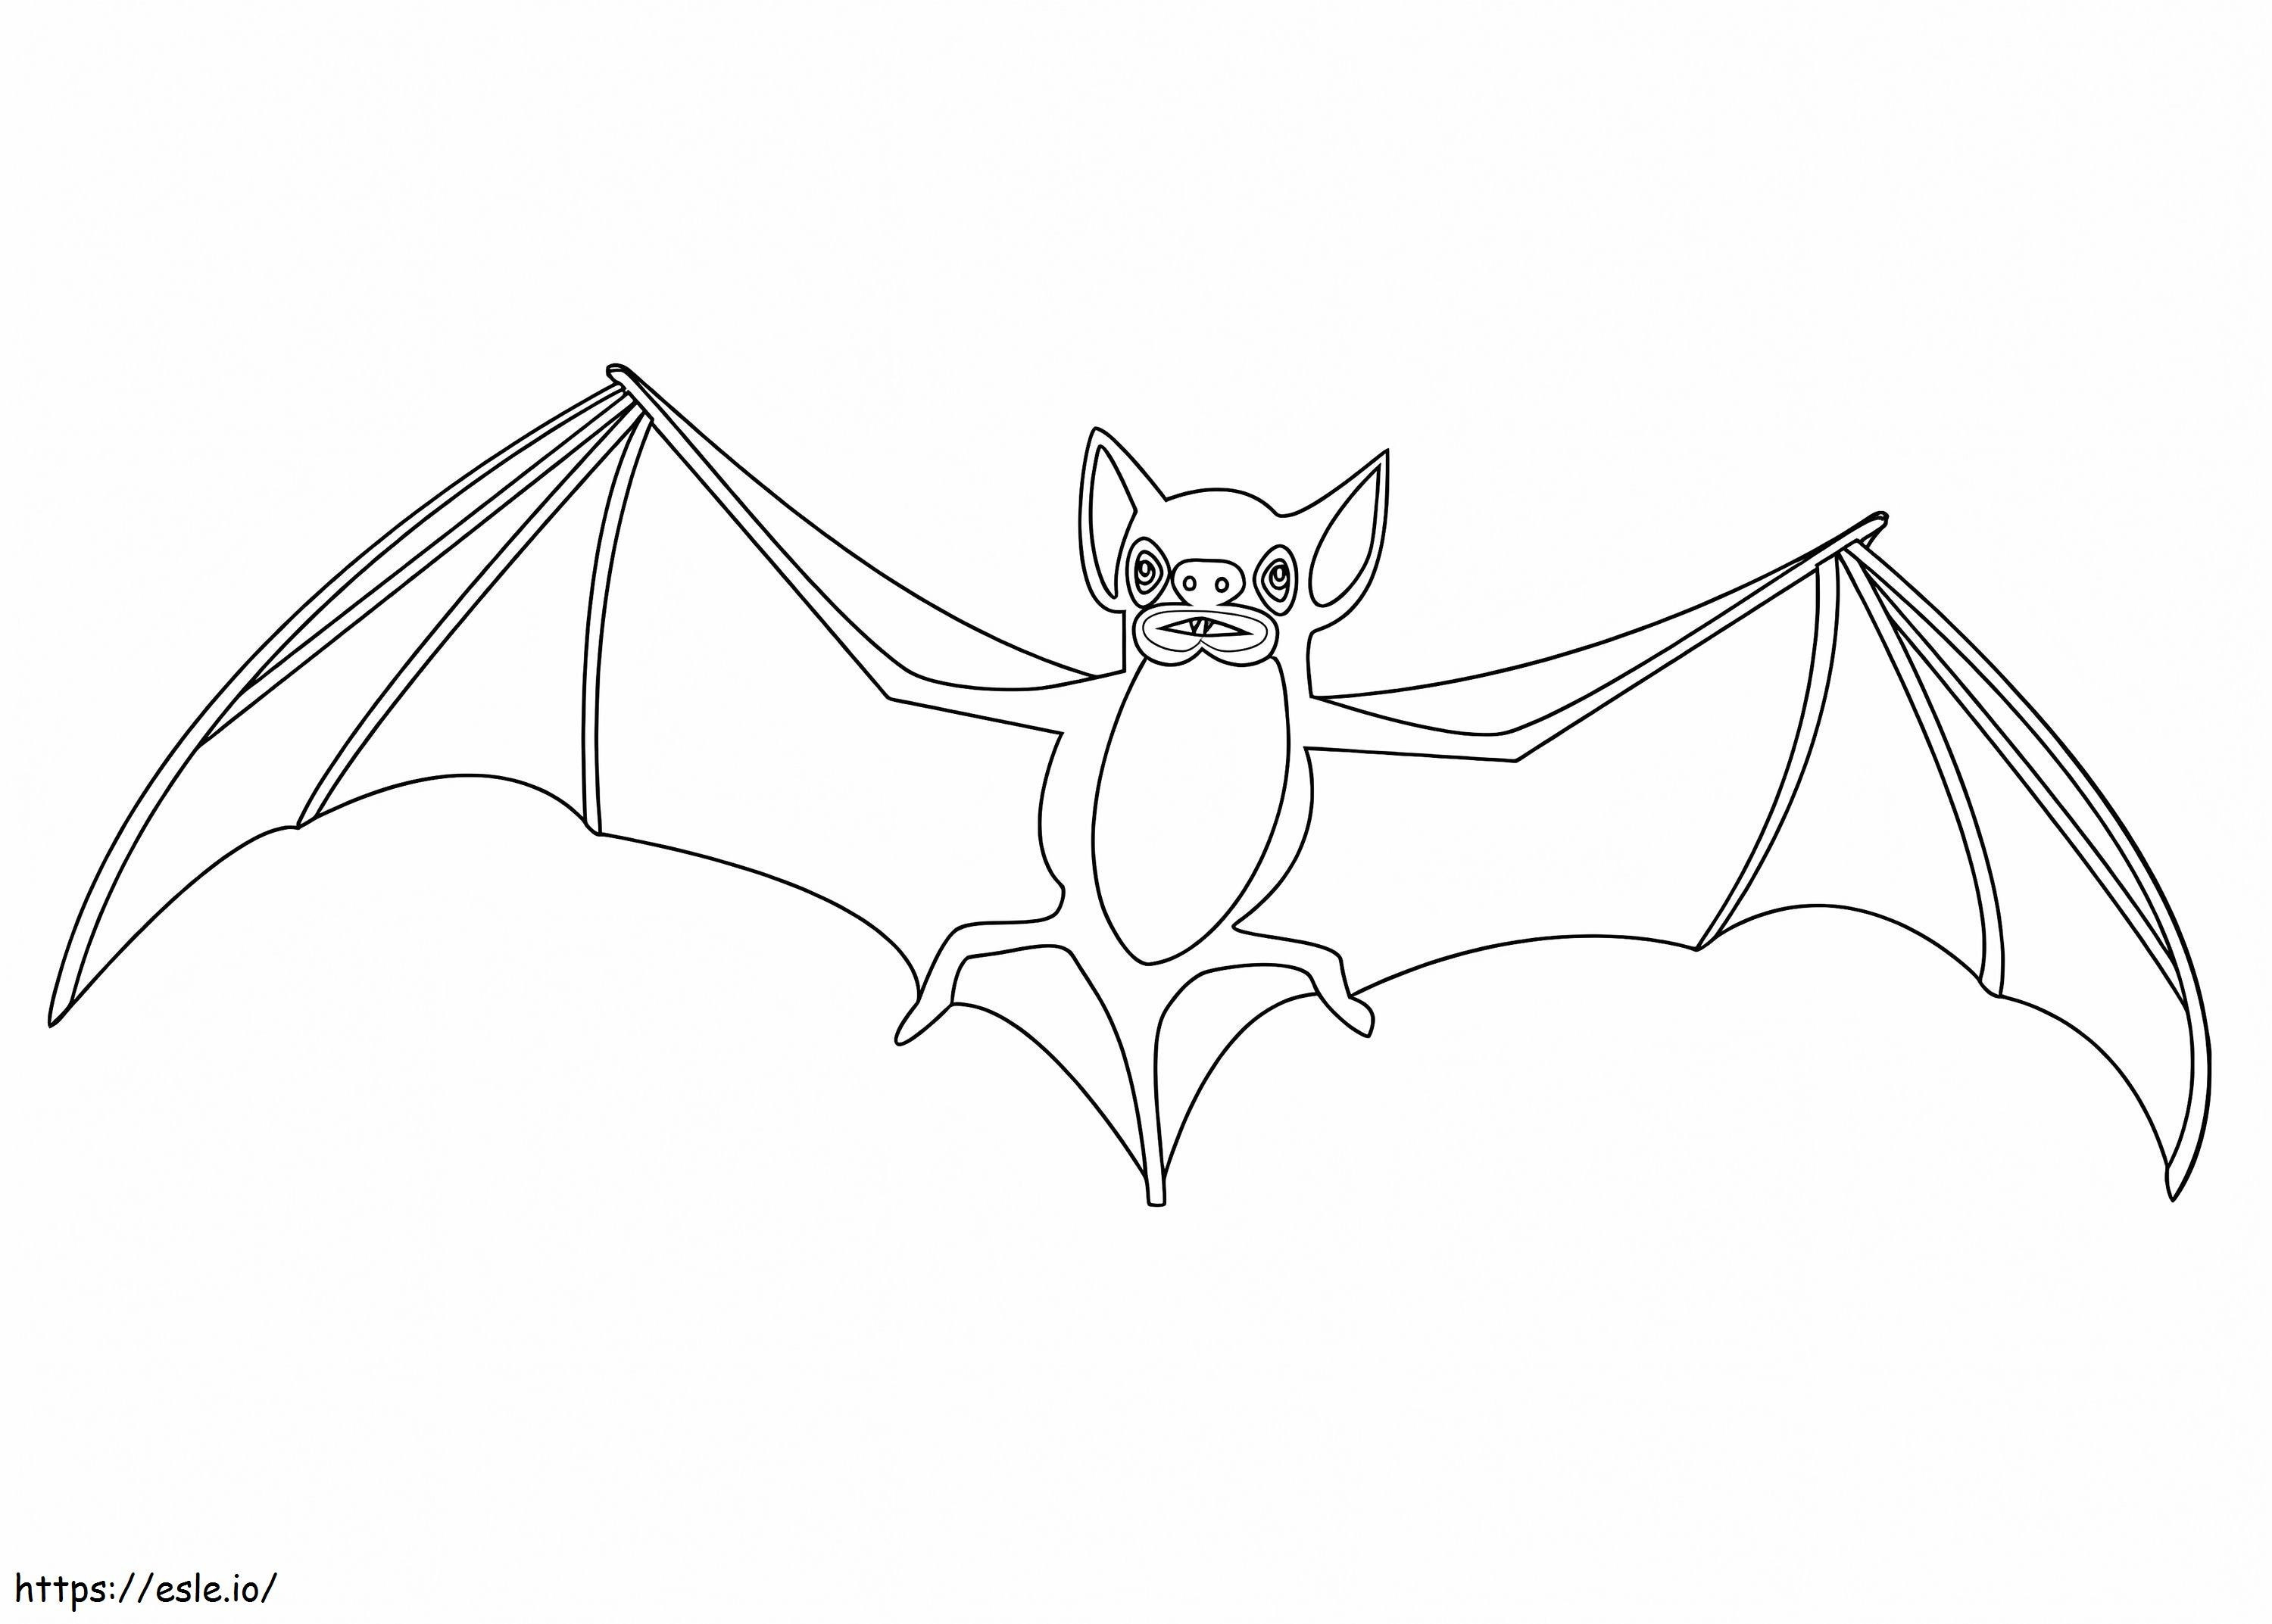 Morcego normal 1 para colorir